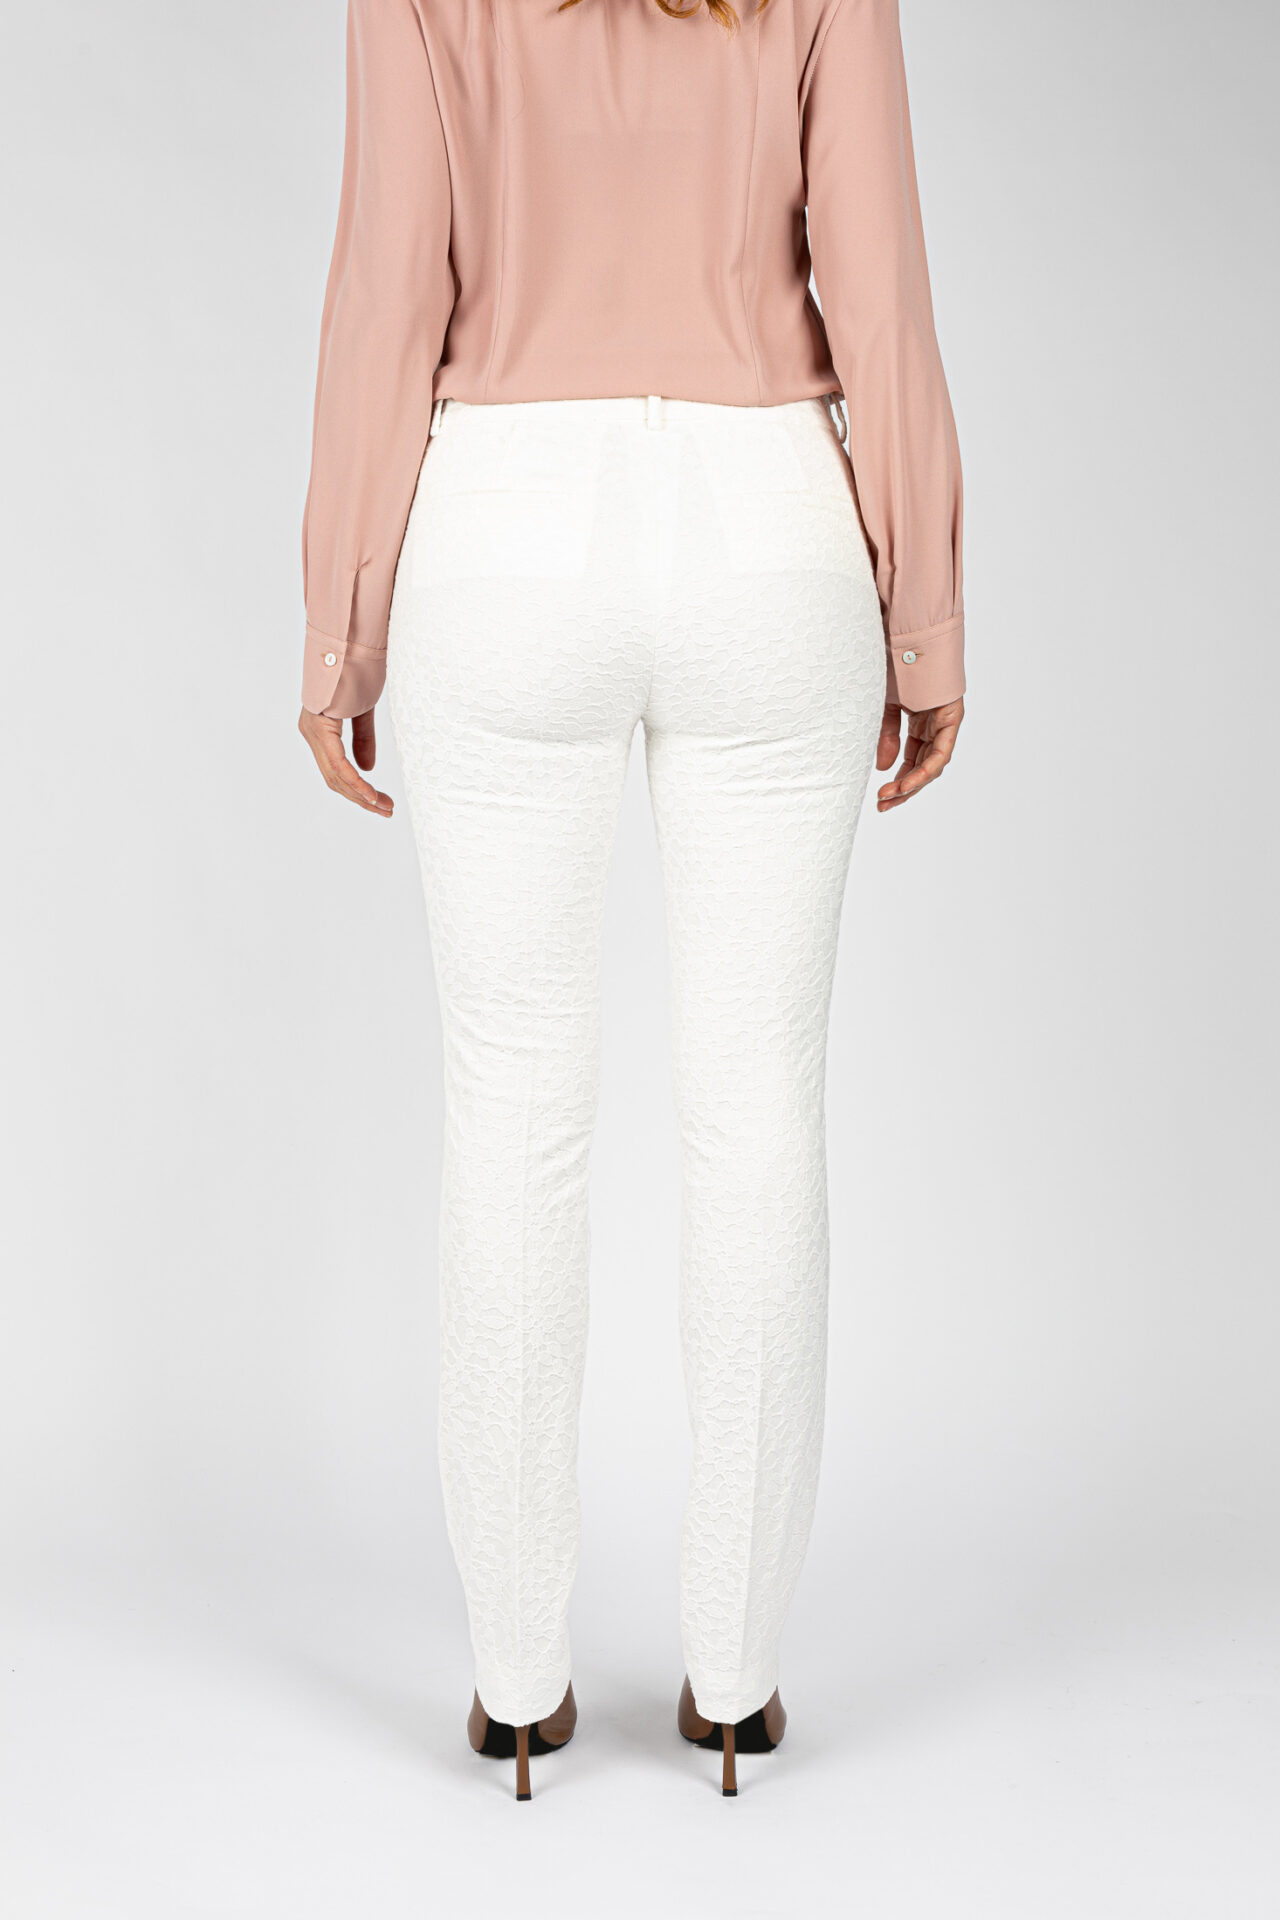 Pantaloni gamba regolare tessuto jacquard colore bianco P19671T51 - 4